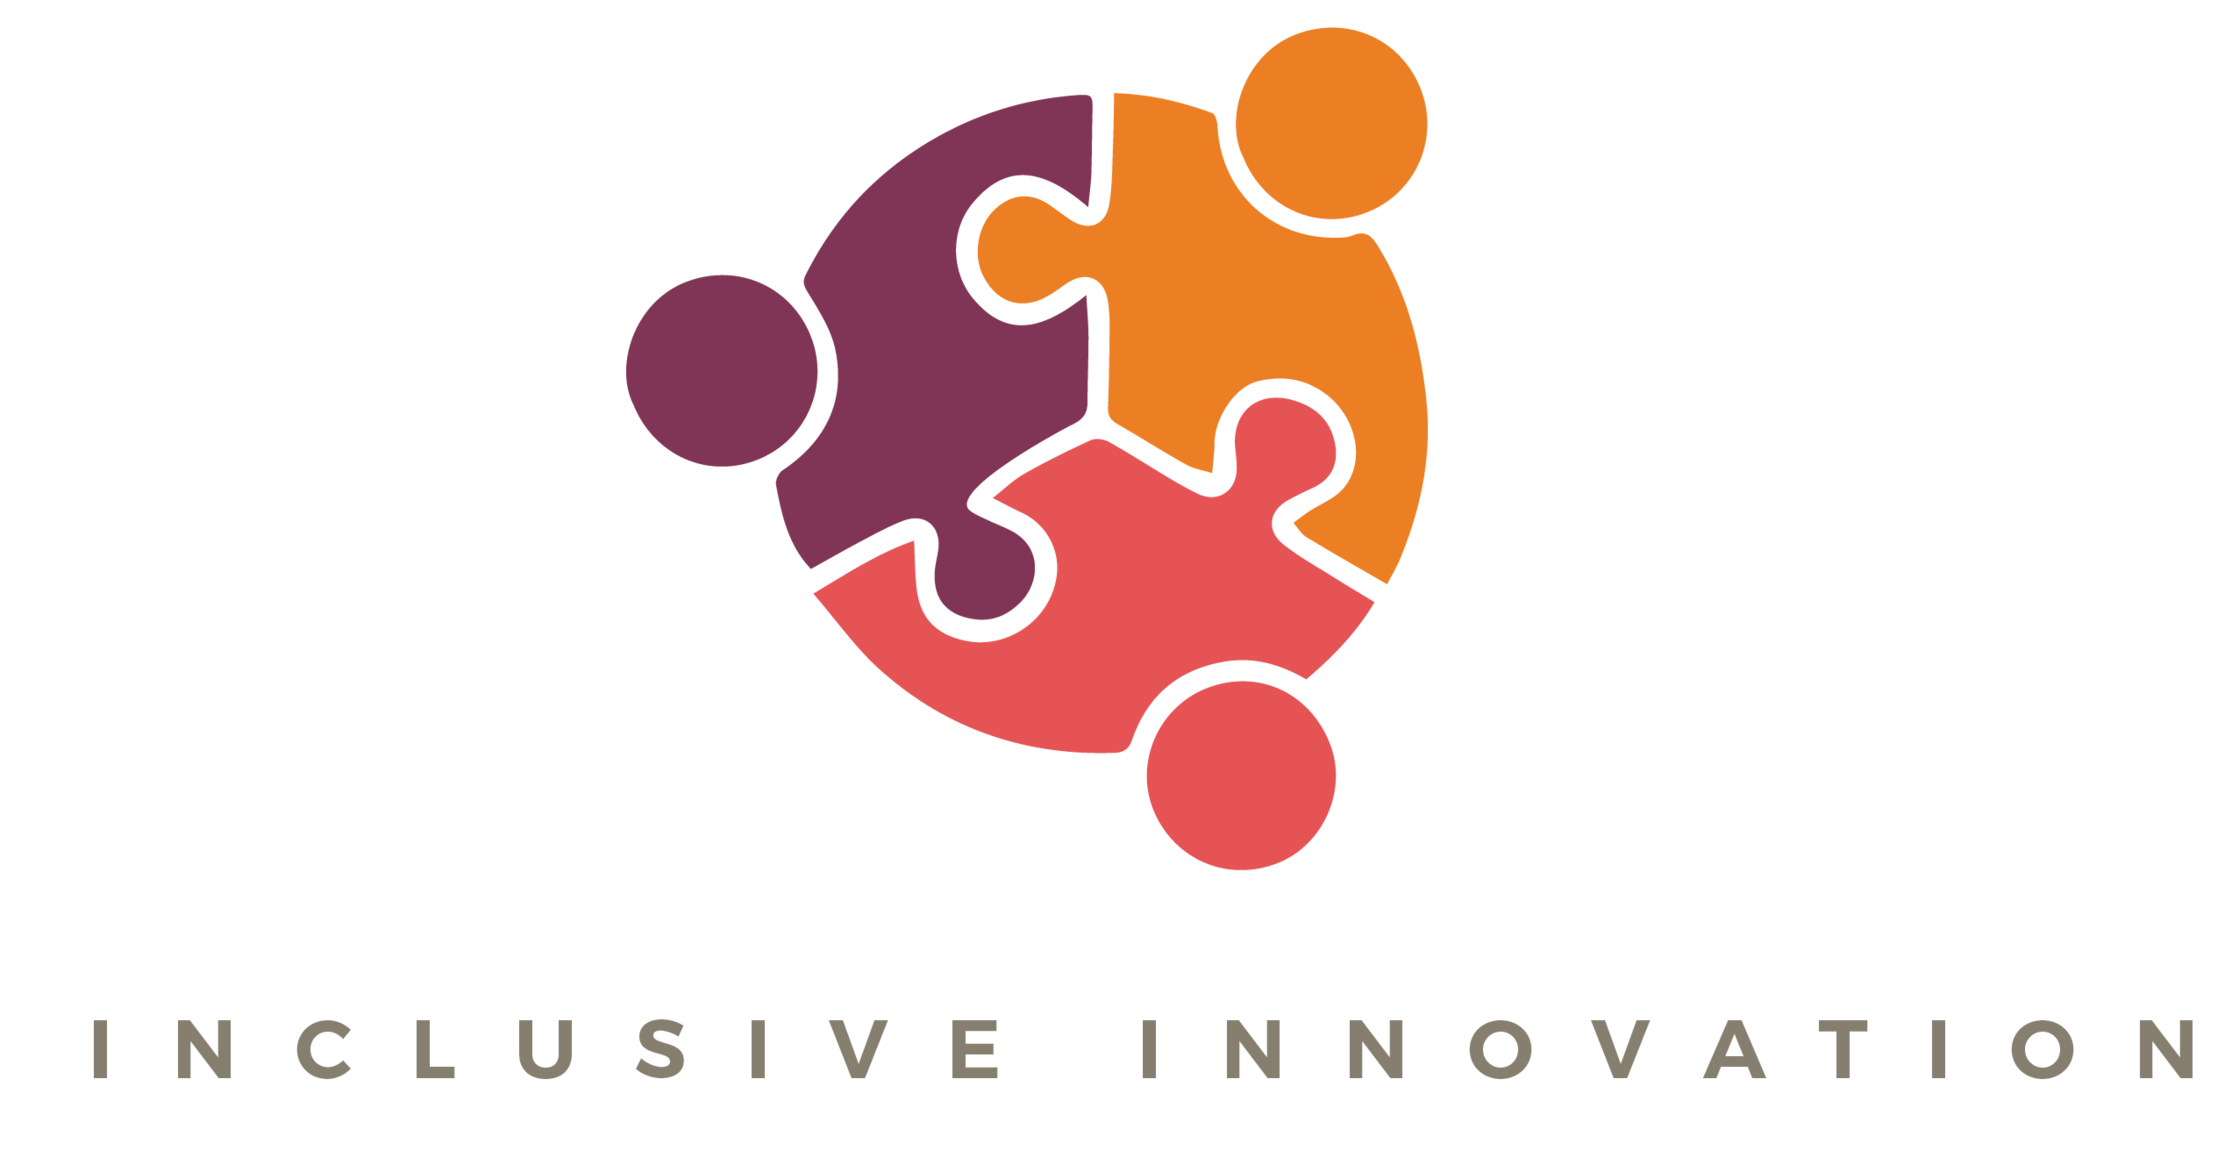 L’innovation inclusive